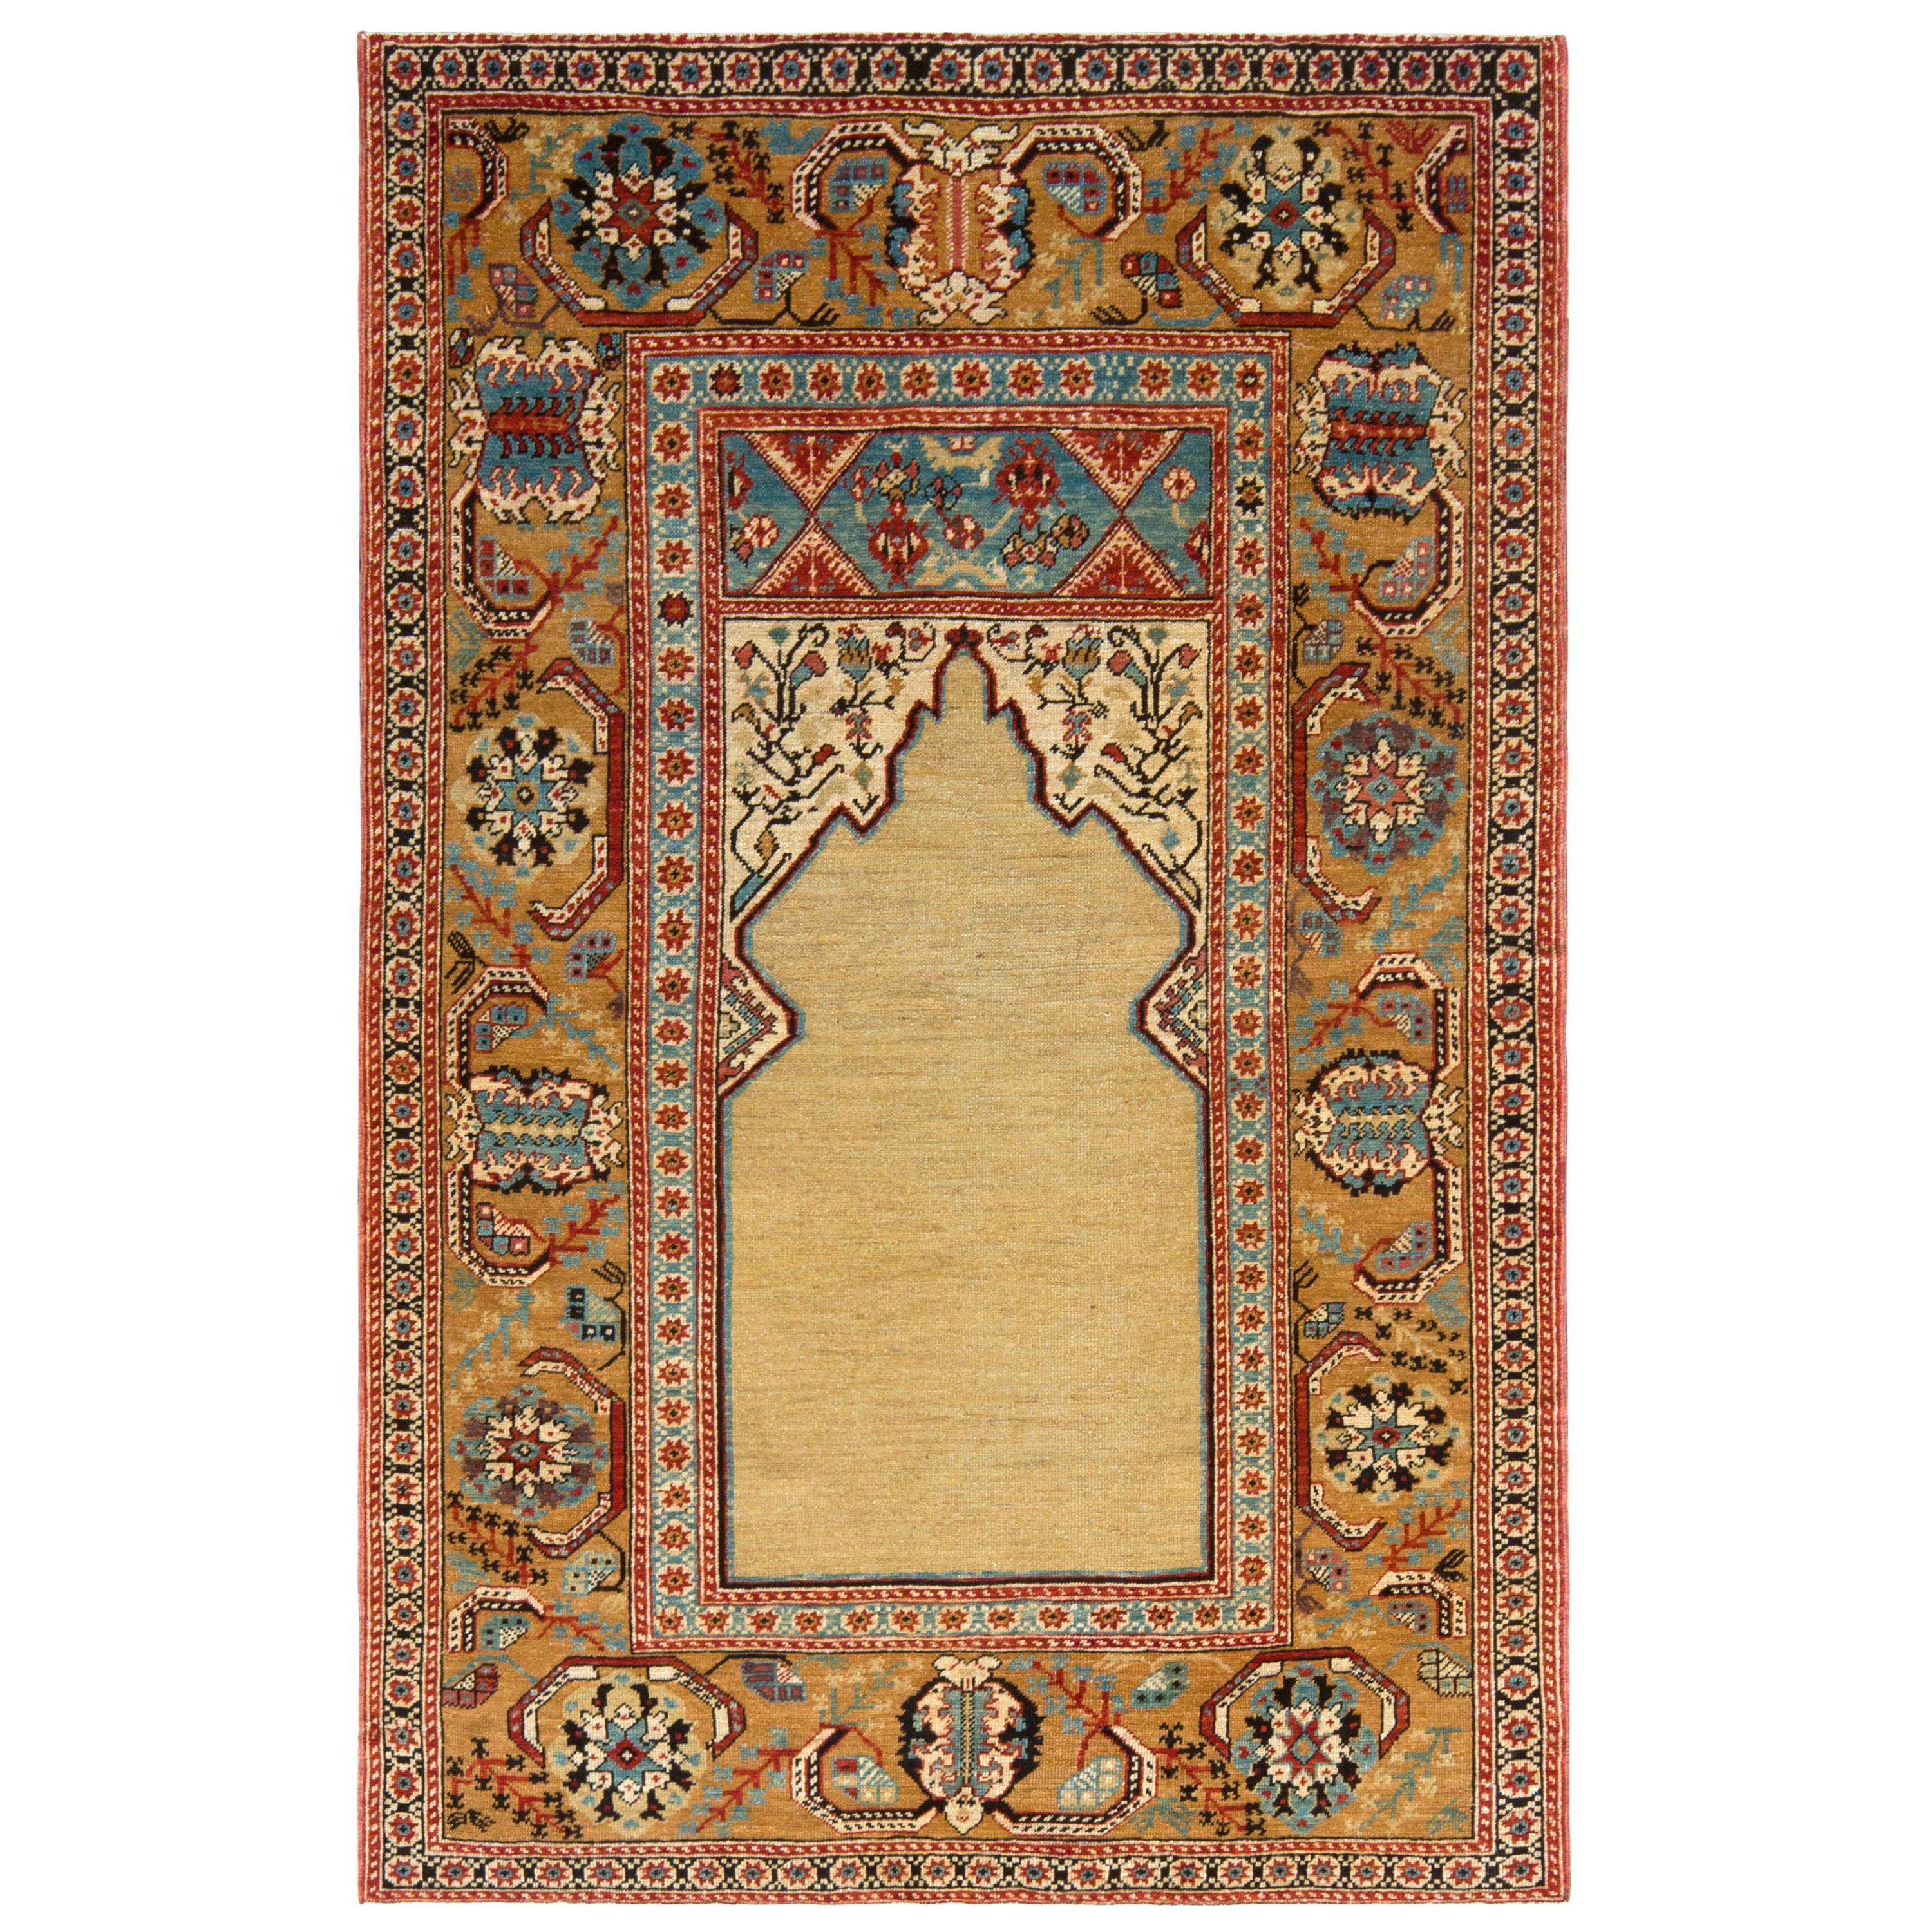 Teppich & Kilims im Stil des 19. Jahrhunderts in Beige, Gold und Blau mit Blumenmuster